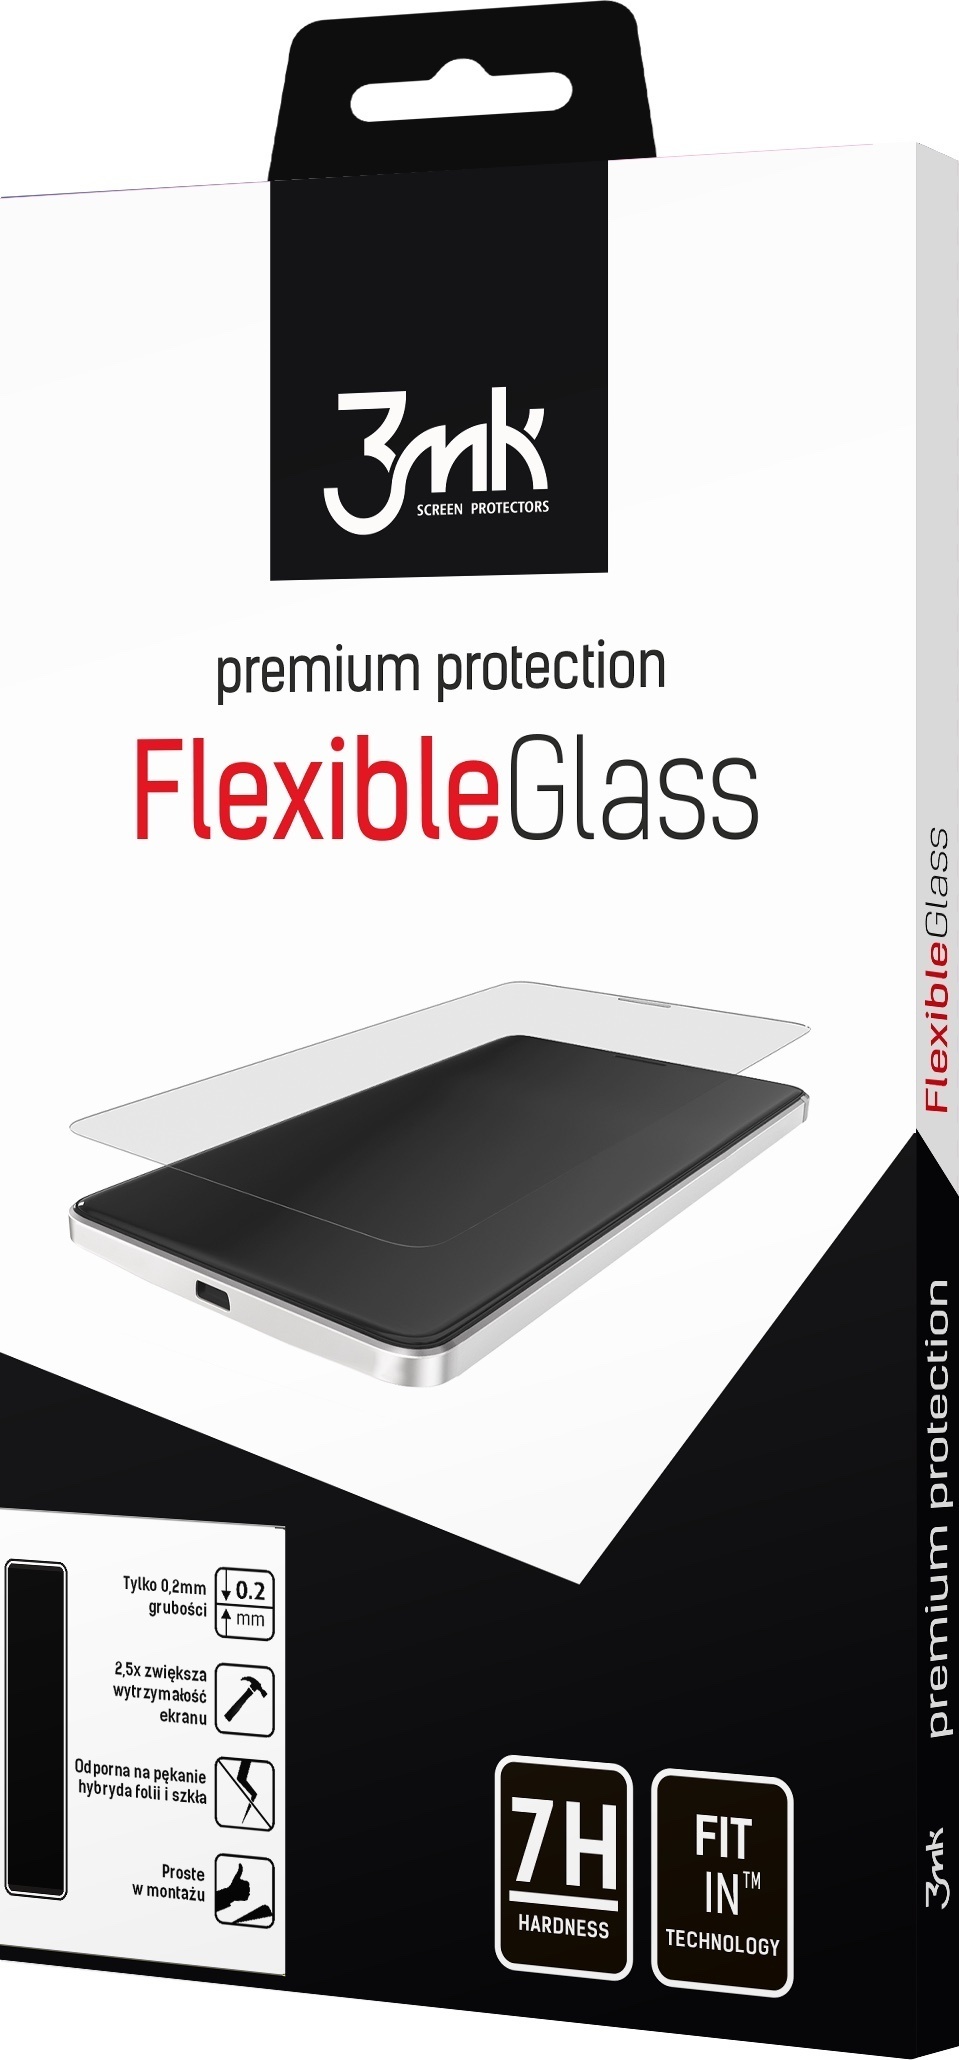 3mk FlexibleGlass Apple iPhone 11 Pro Max/XS Max